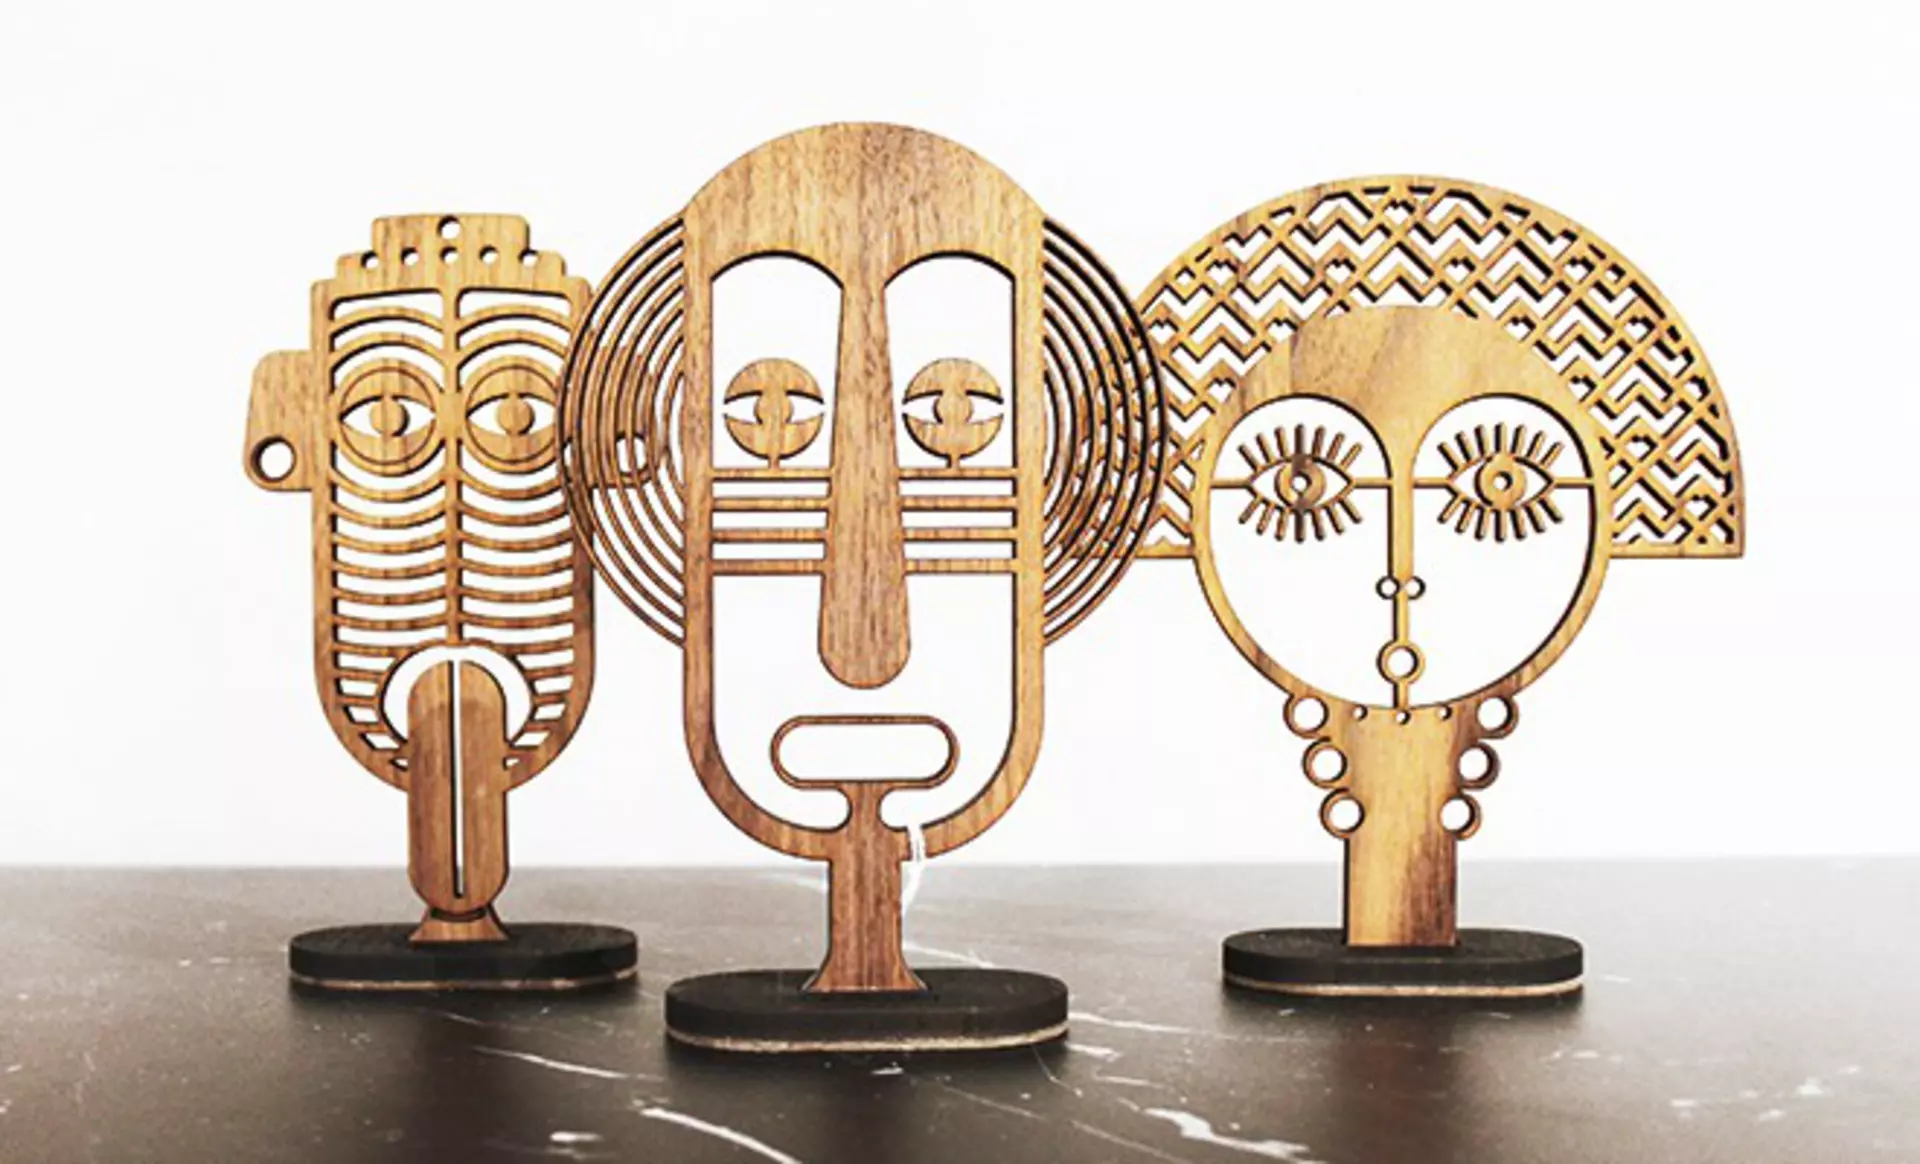 Detailverliebte Masken zum aufstellen: Mini Chili Figuren Triplet von UMASQU